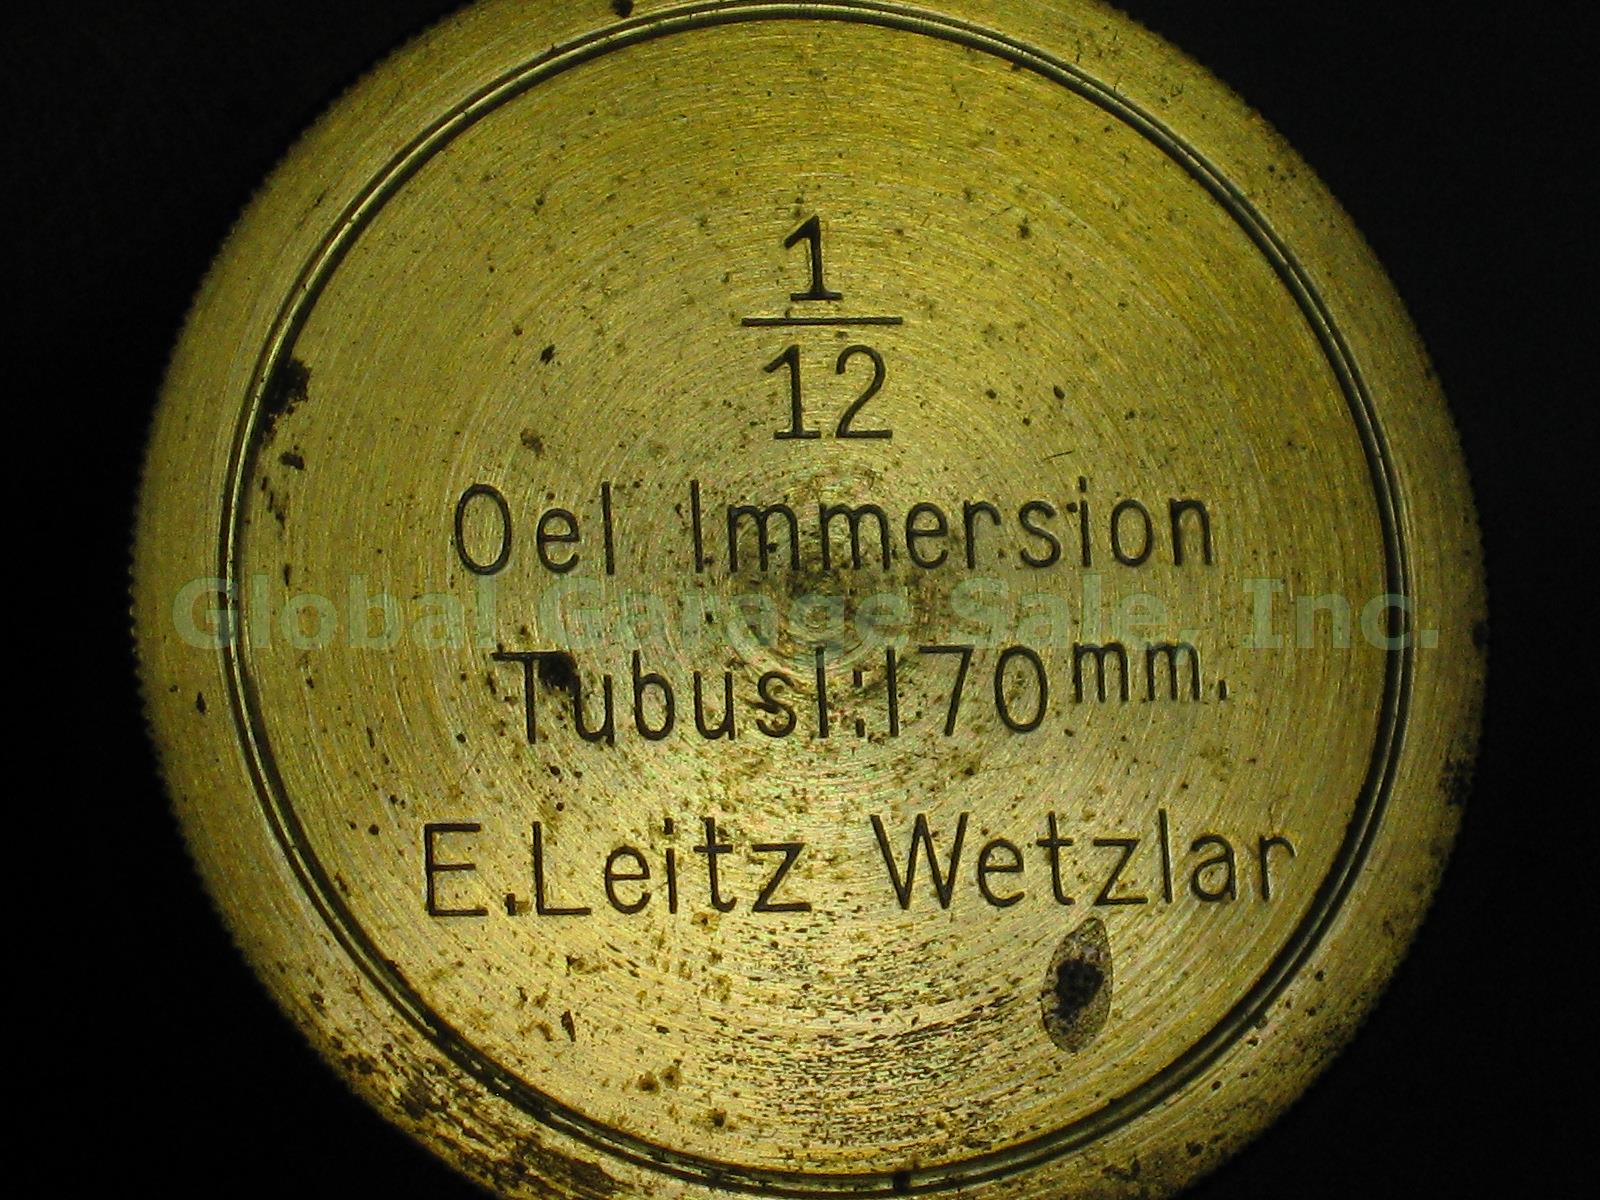 Vtg Antique E Leitz Wetzlar Brass Microscope 94062 Oil Immersion Objective +Case 13